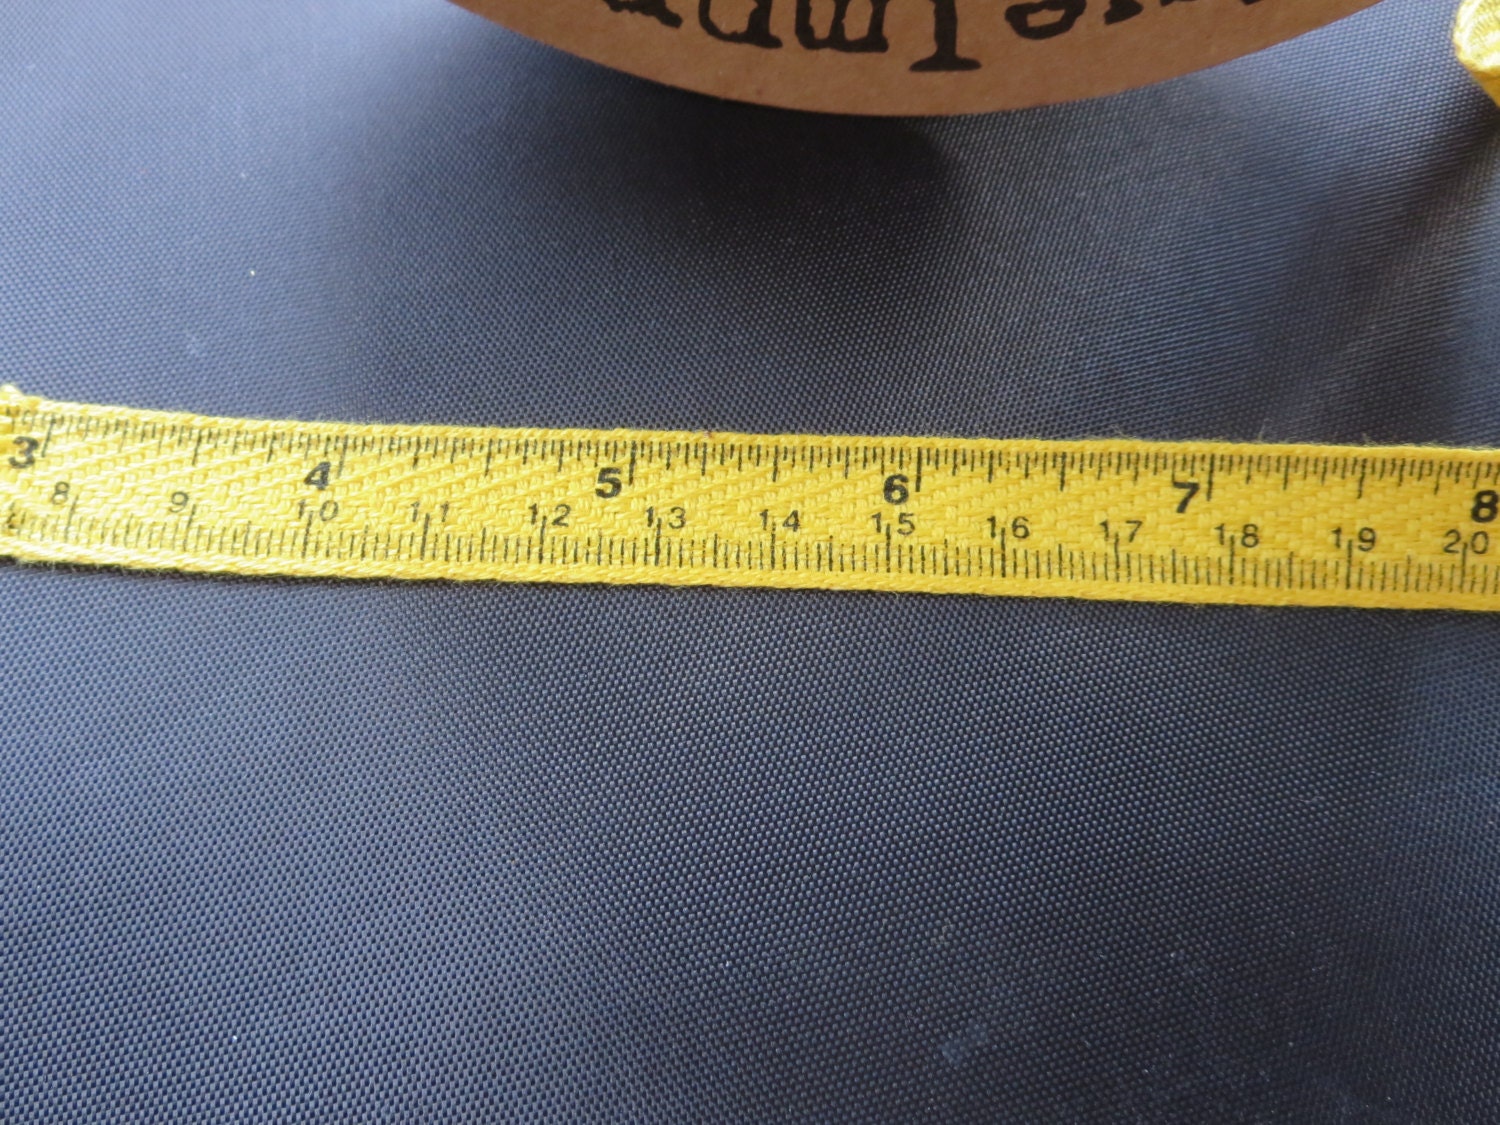 Tape Measure Twill Yellow - 25 yard Spool - More In Stock!